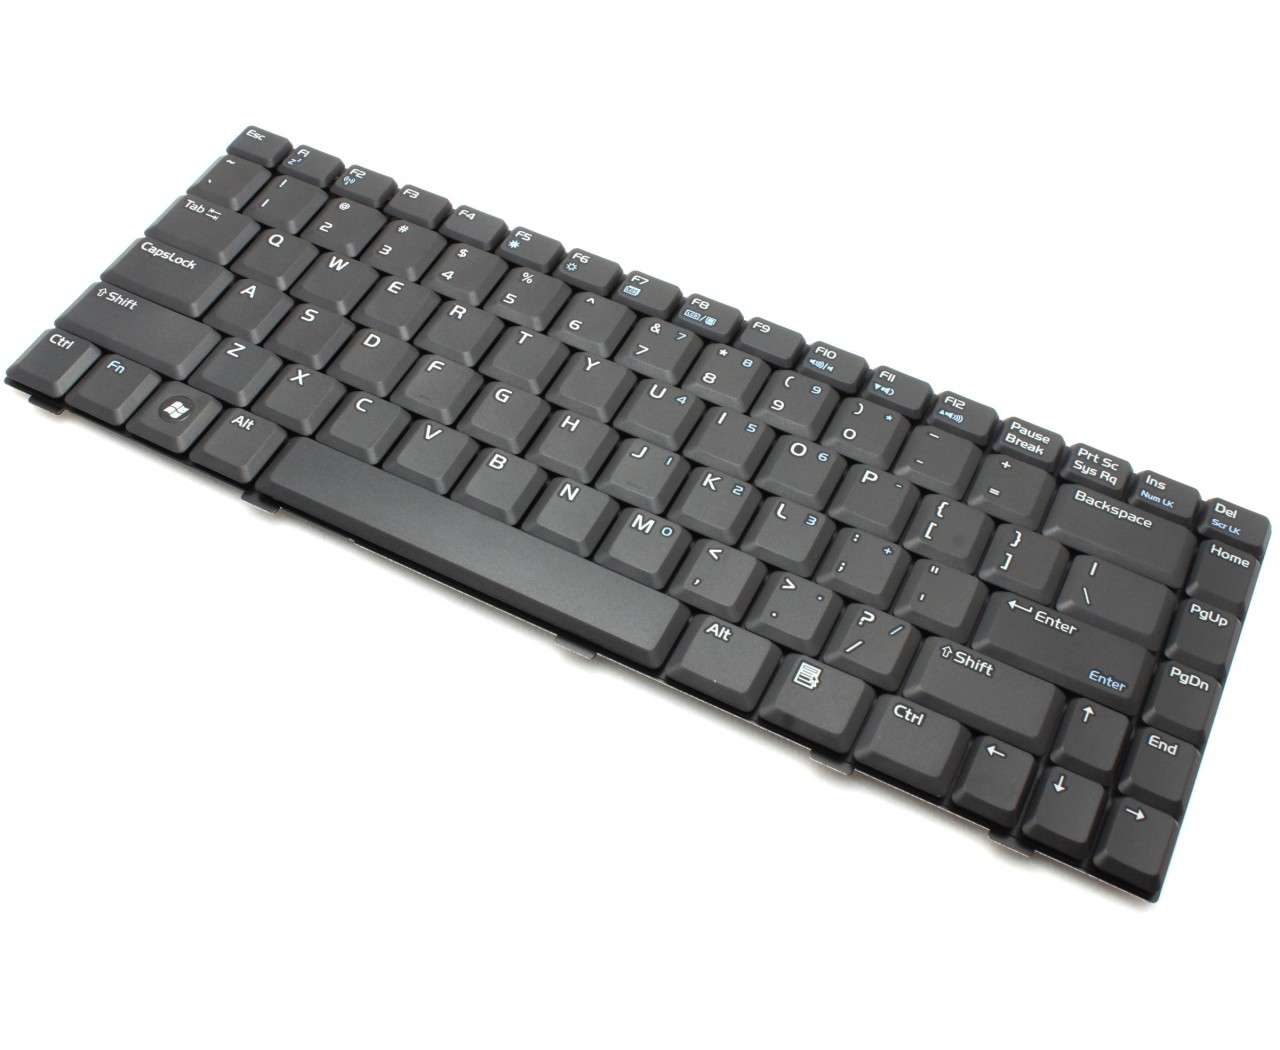 Tastatura Asus F8VG